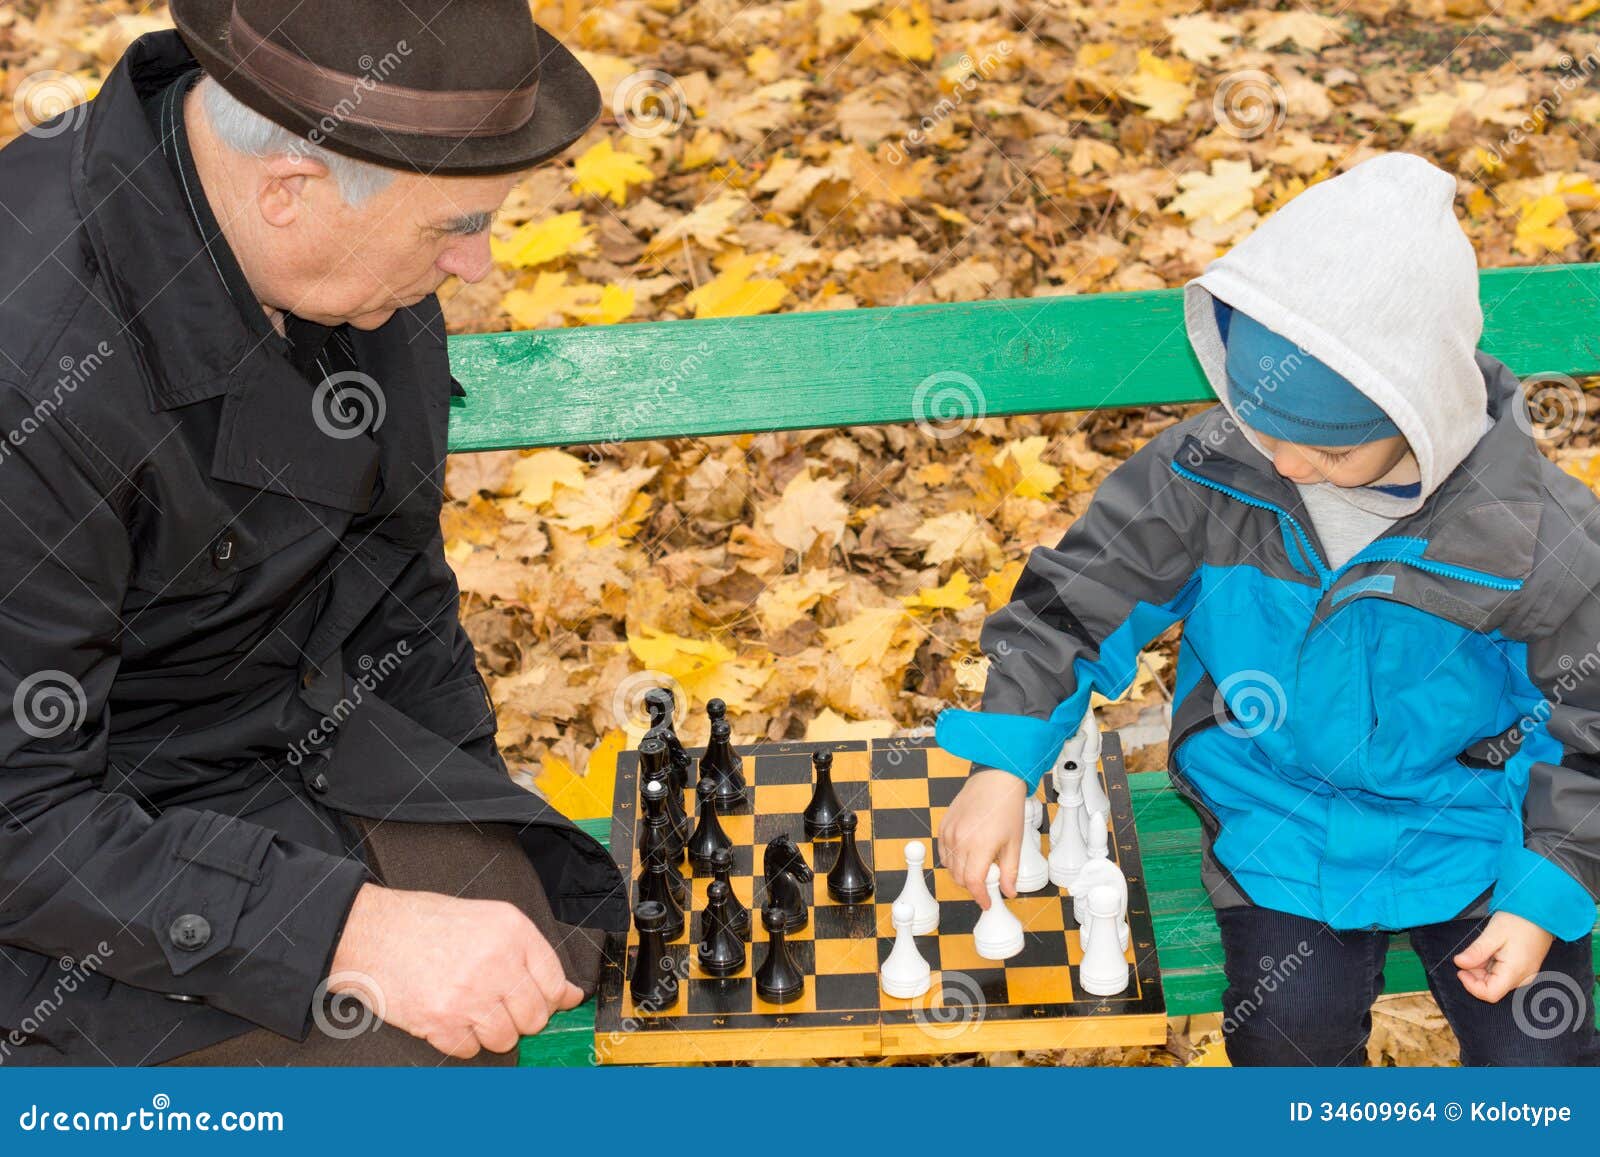 Дед с внуком играют в шашки. Дед внук шахматы. Дед и внук играют в шахматы. Дед и внук шахматы фотосессия. Дедушка и внучка играют в шахматы фотография.